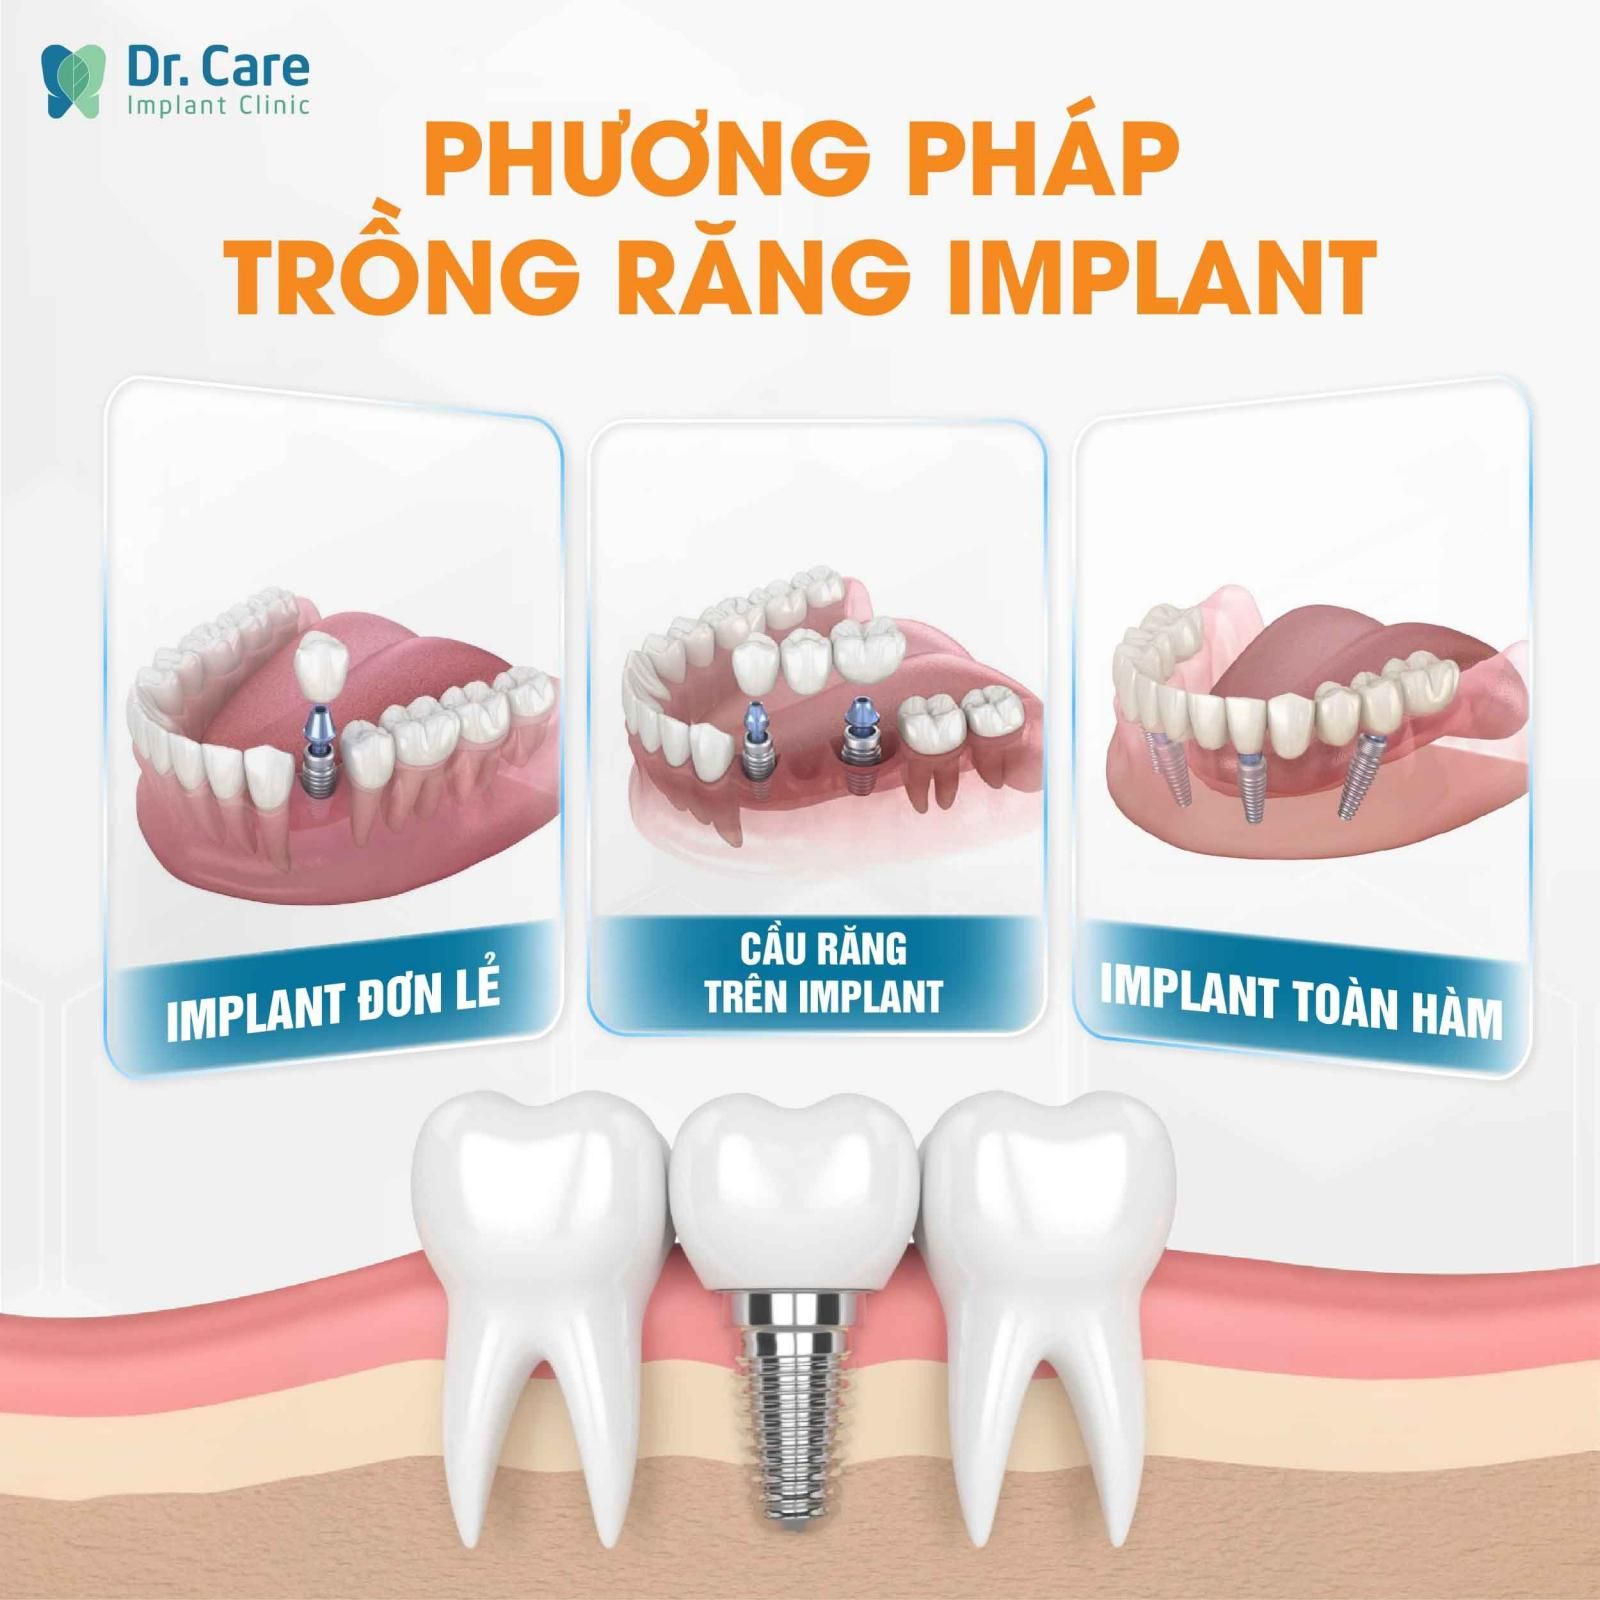 Trồng răng Implant (Cấy ghép Implant) là gì?